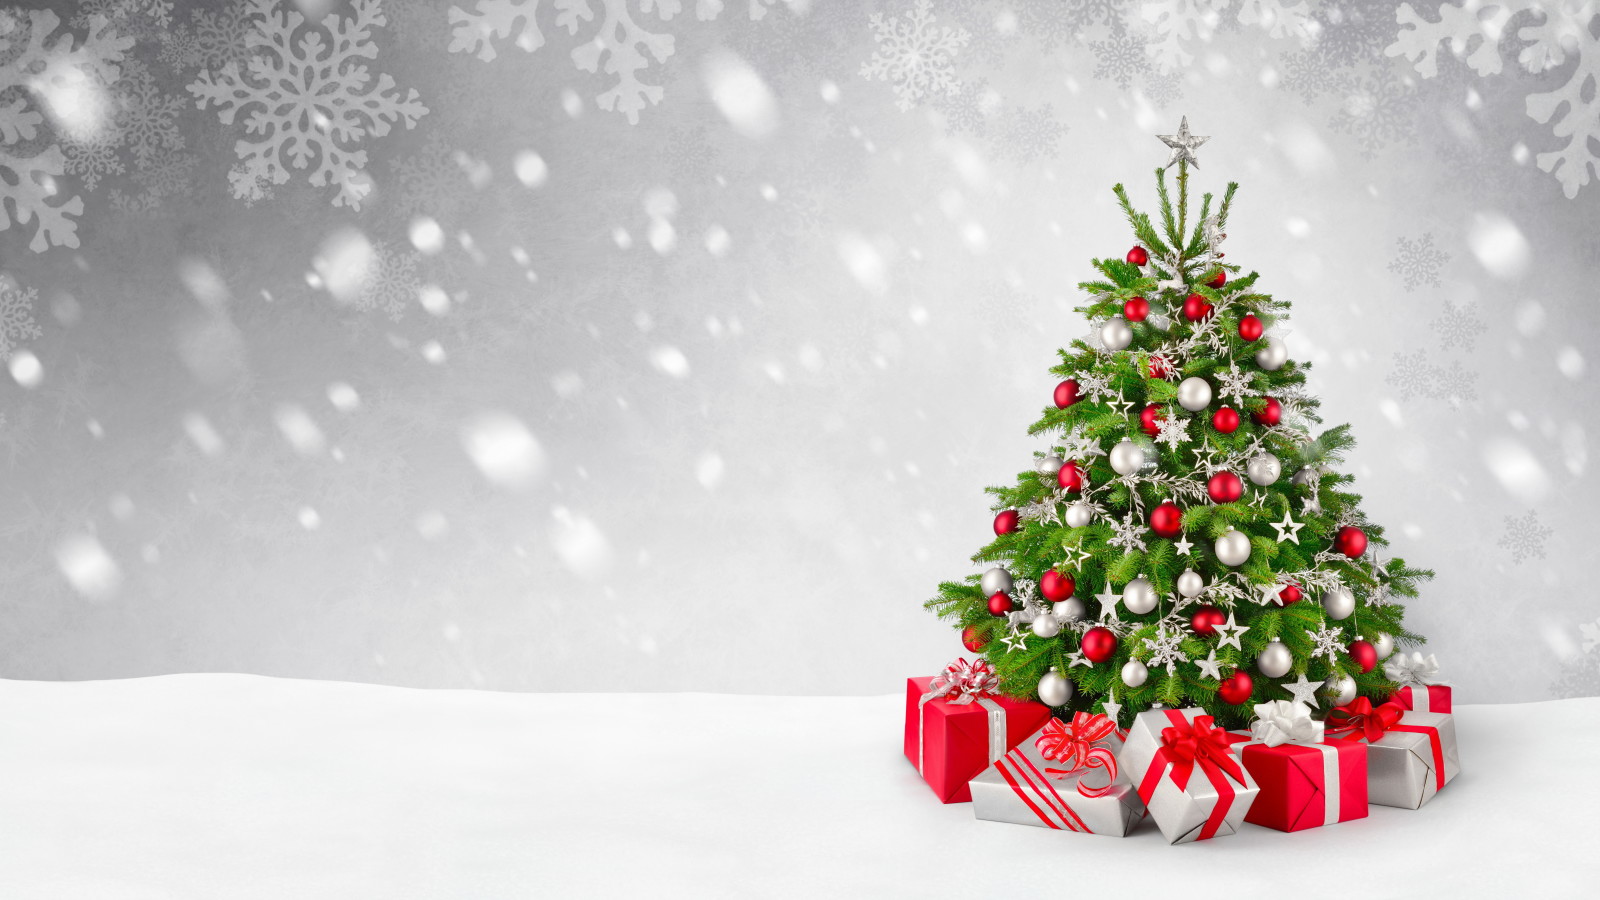 눈, 나무, 새해, 크리스마스, 장식, 명랑한, 겨울